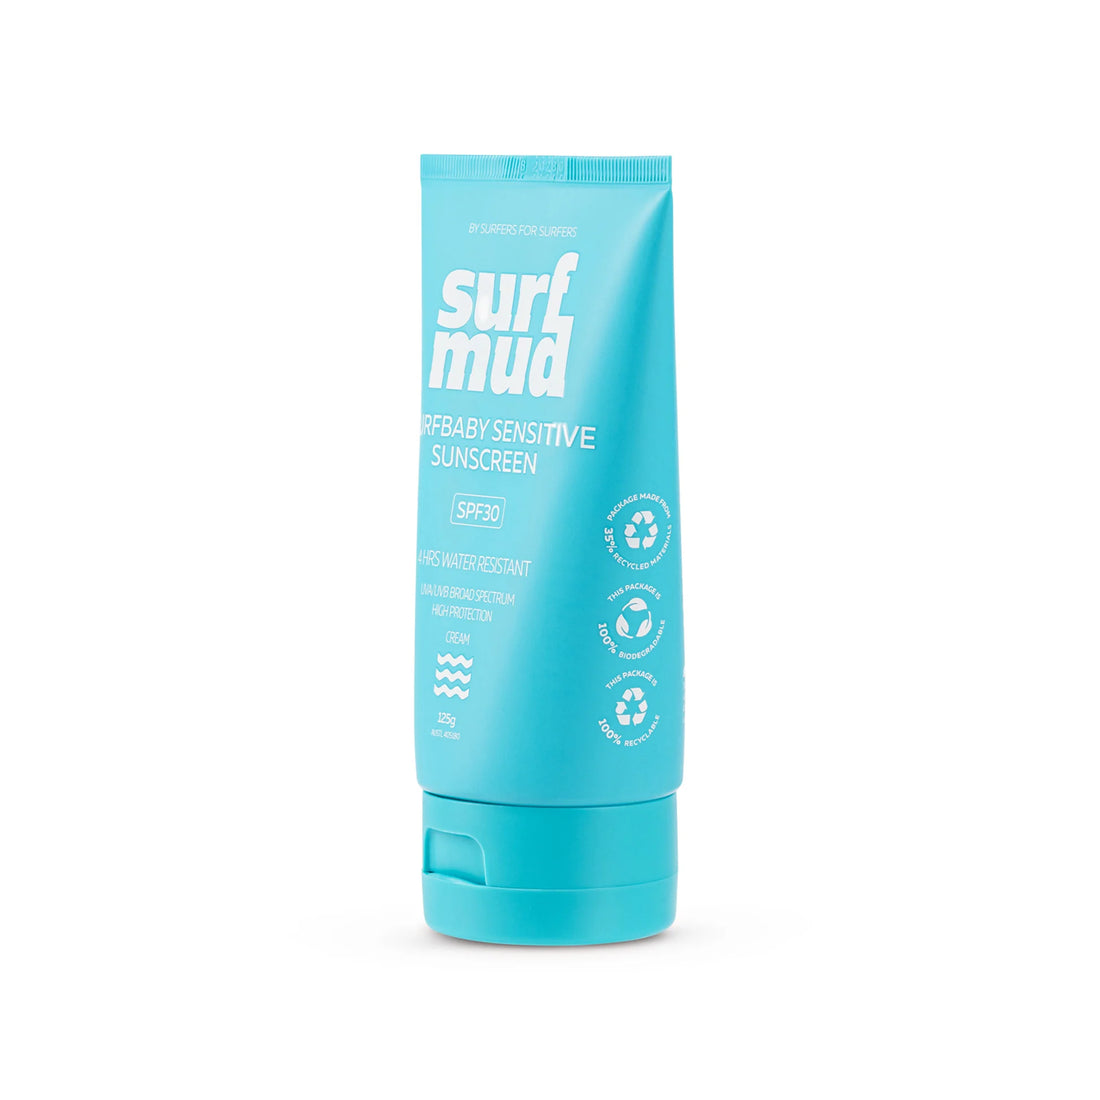 Surfmud - Surfbaby Sensitive SPF30  Sunscreen - 125g - Seaside Surf Shop 